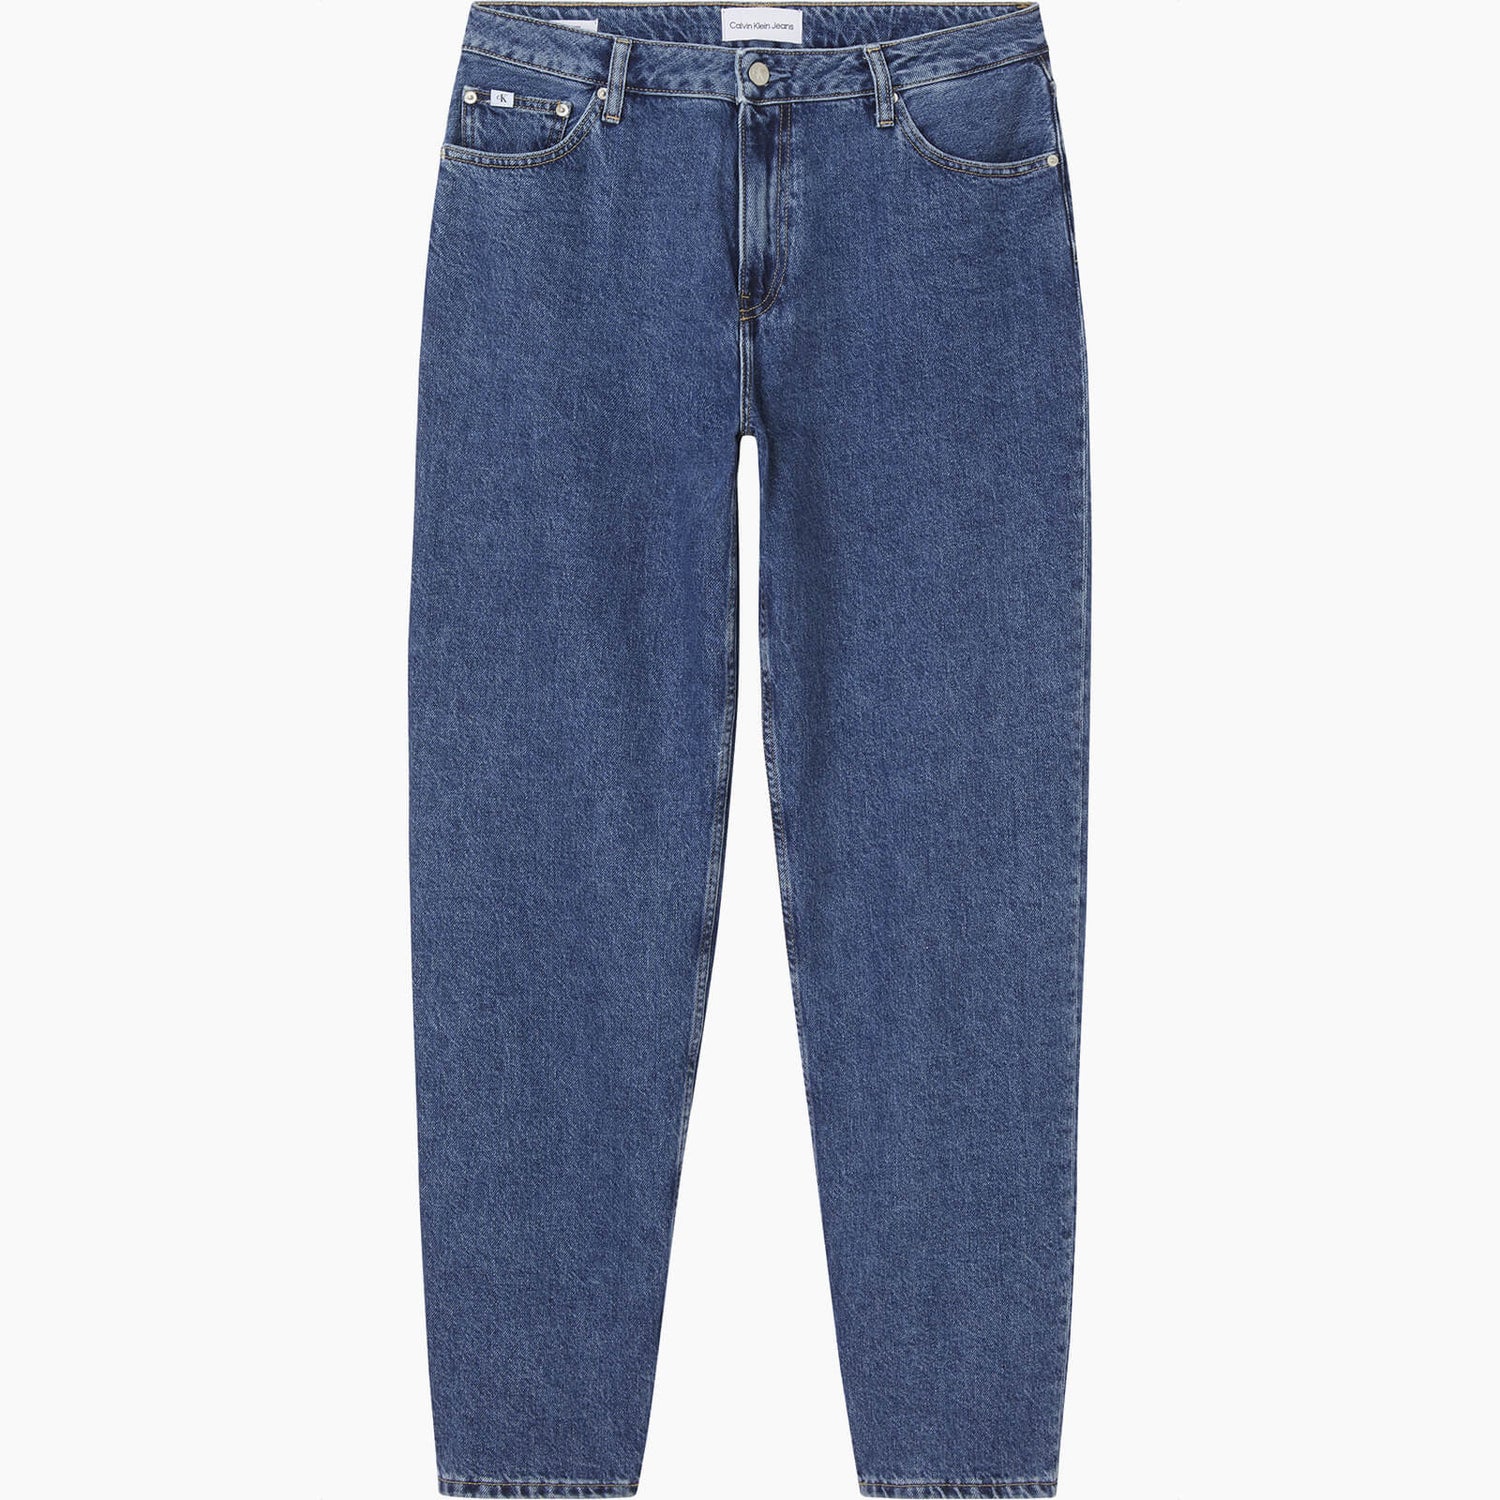 Calvin Klein Jeans Women's 90'S Straight Jeans - Denim Medium - W25